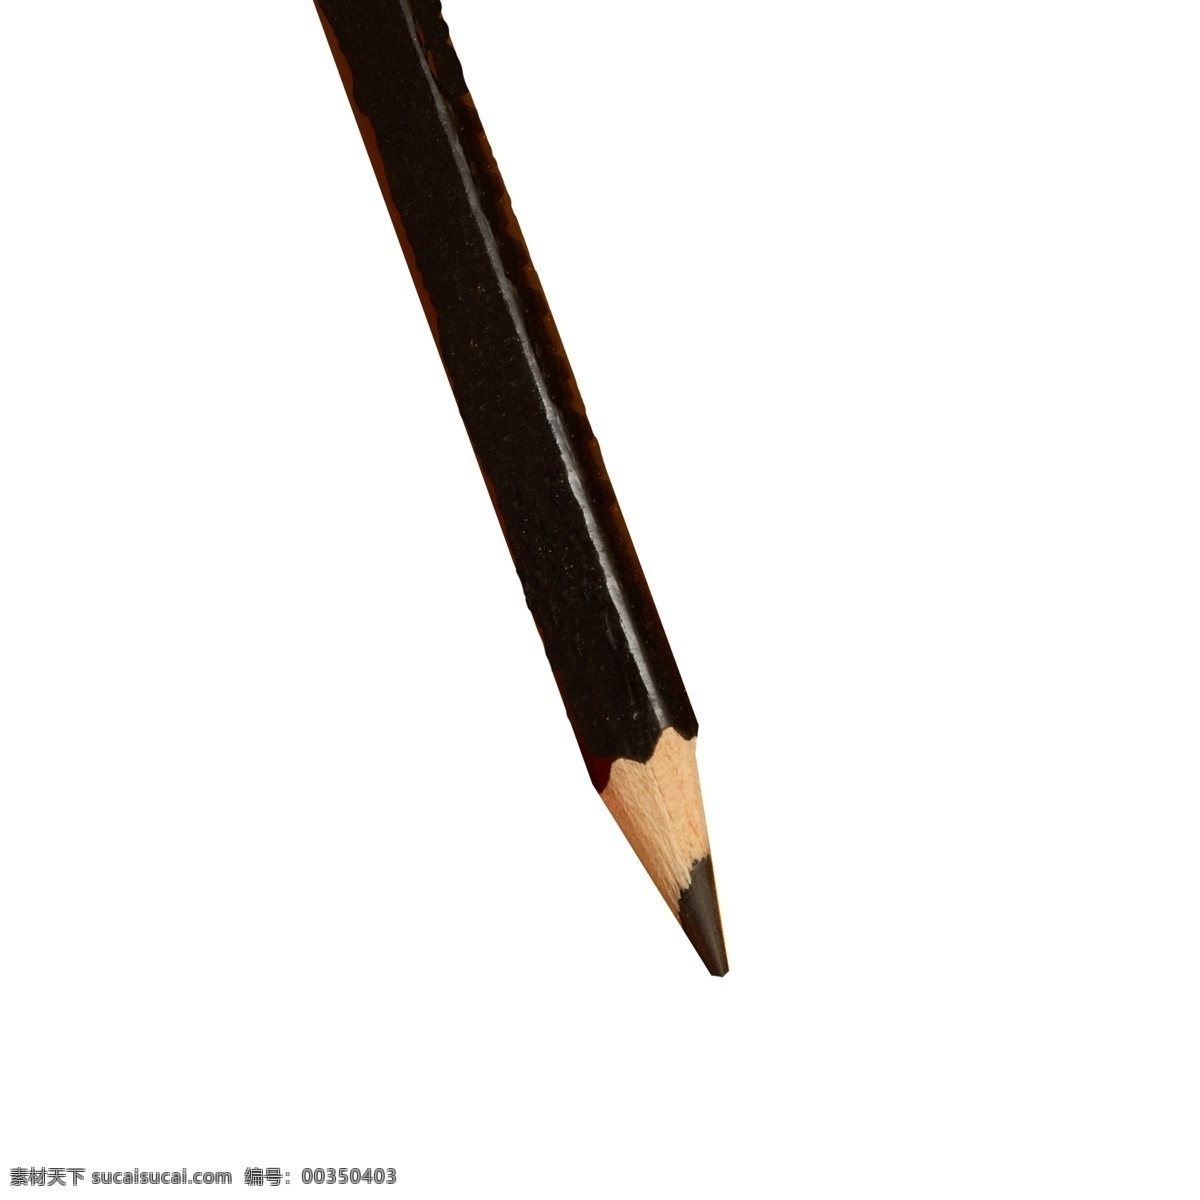 一根铅笔 铅笔 水彩笔 画笔 实物 实物免扣 实物下载